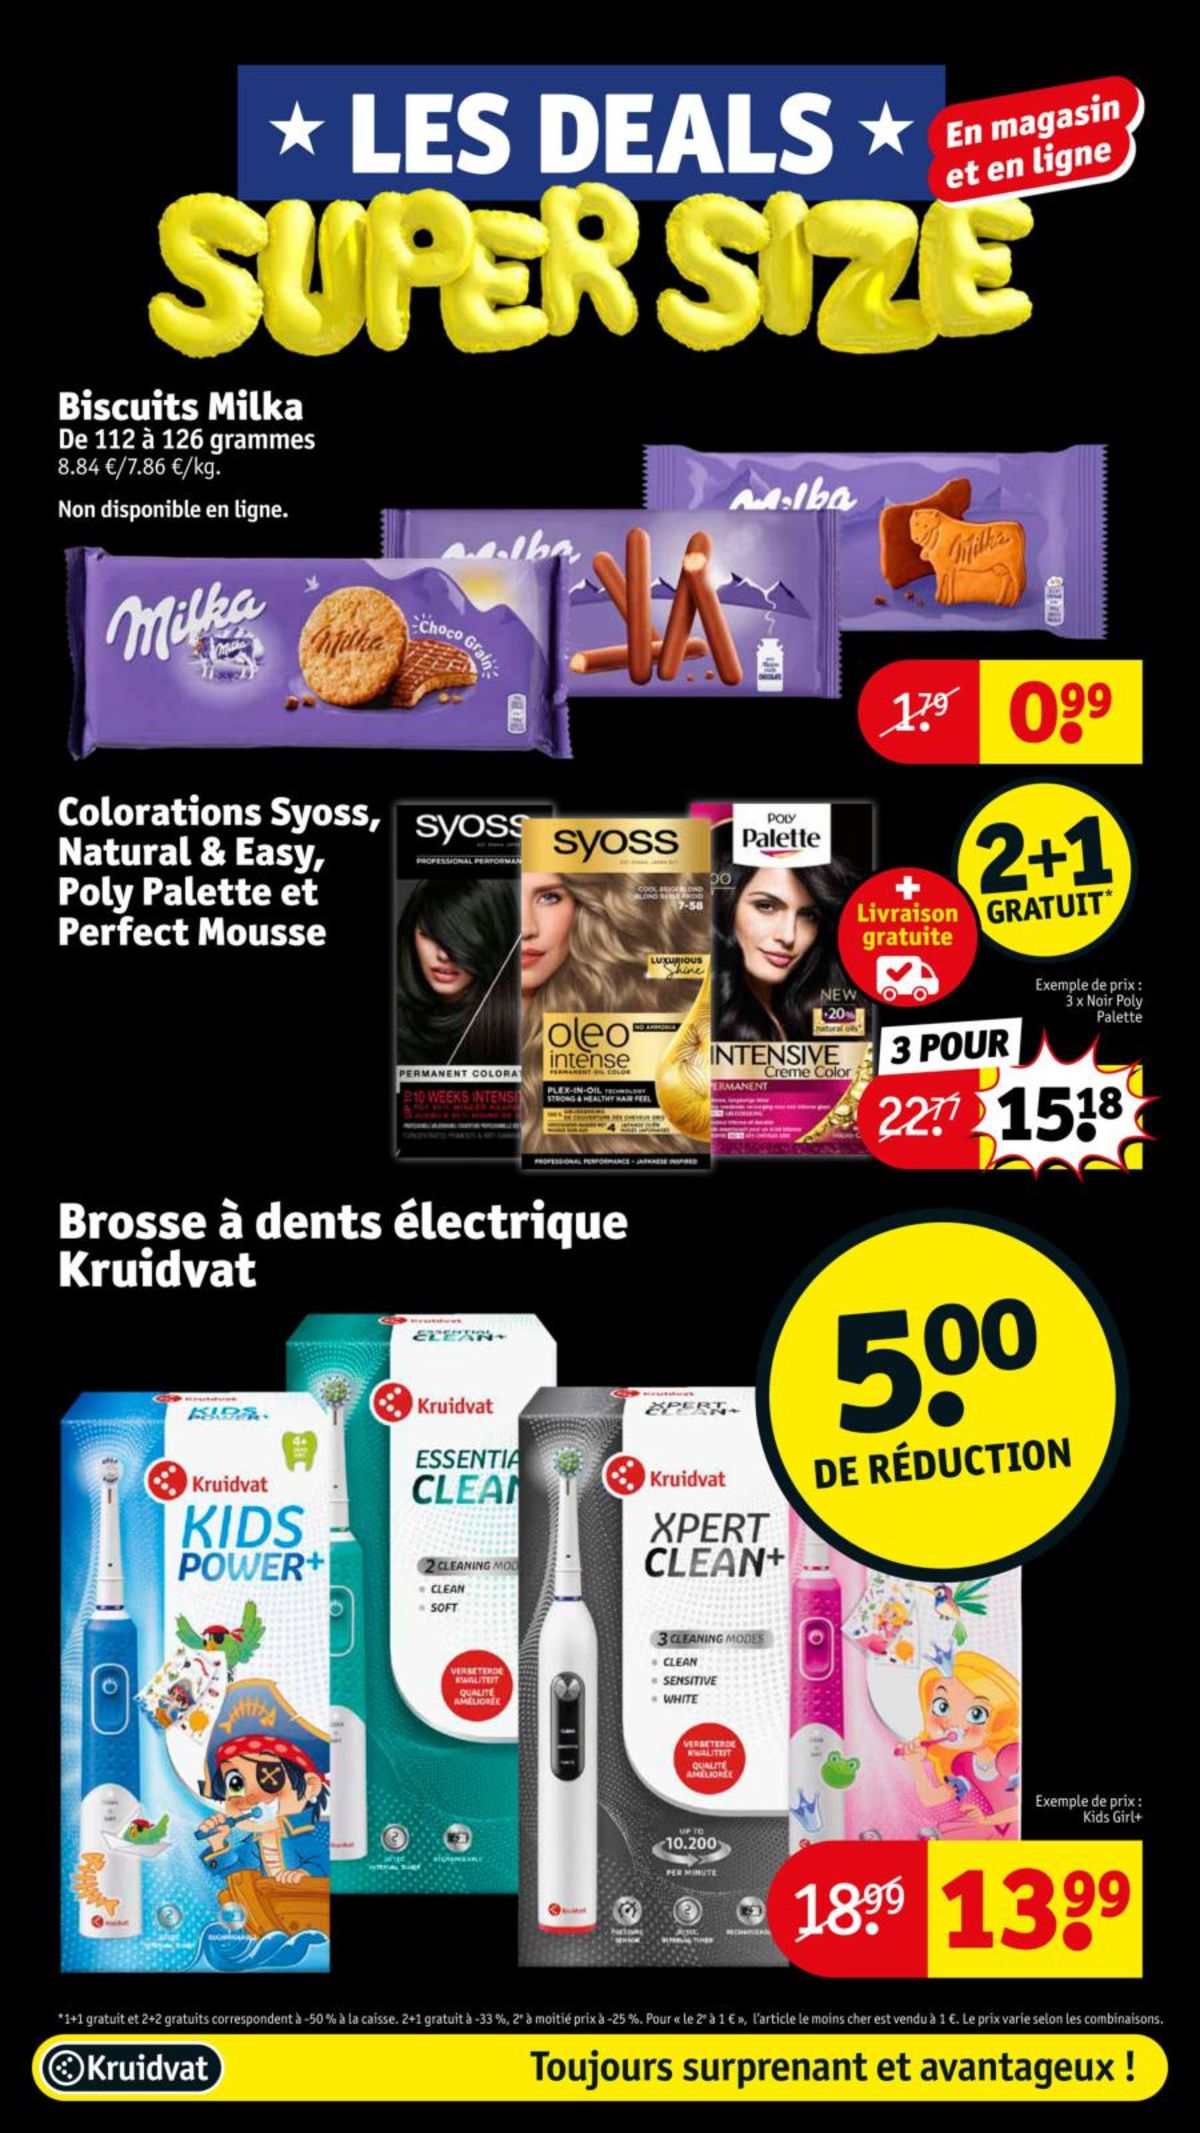 Catalogue Les deals super size, page 00049